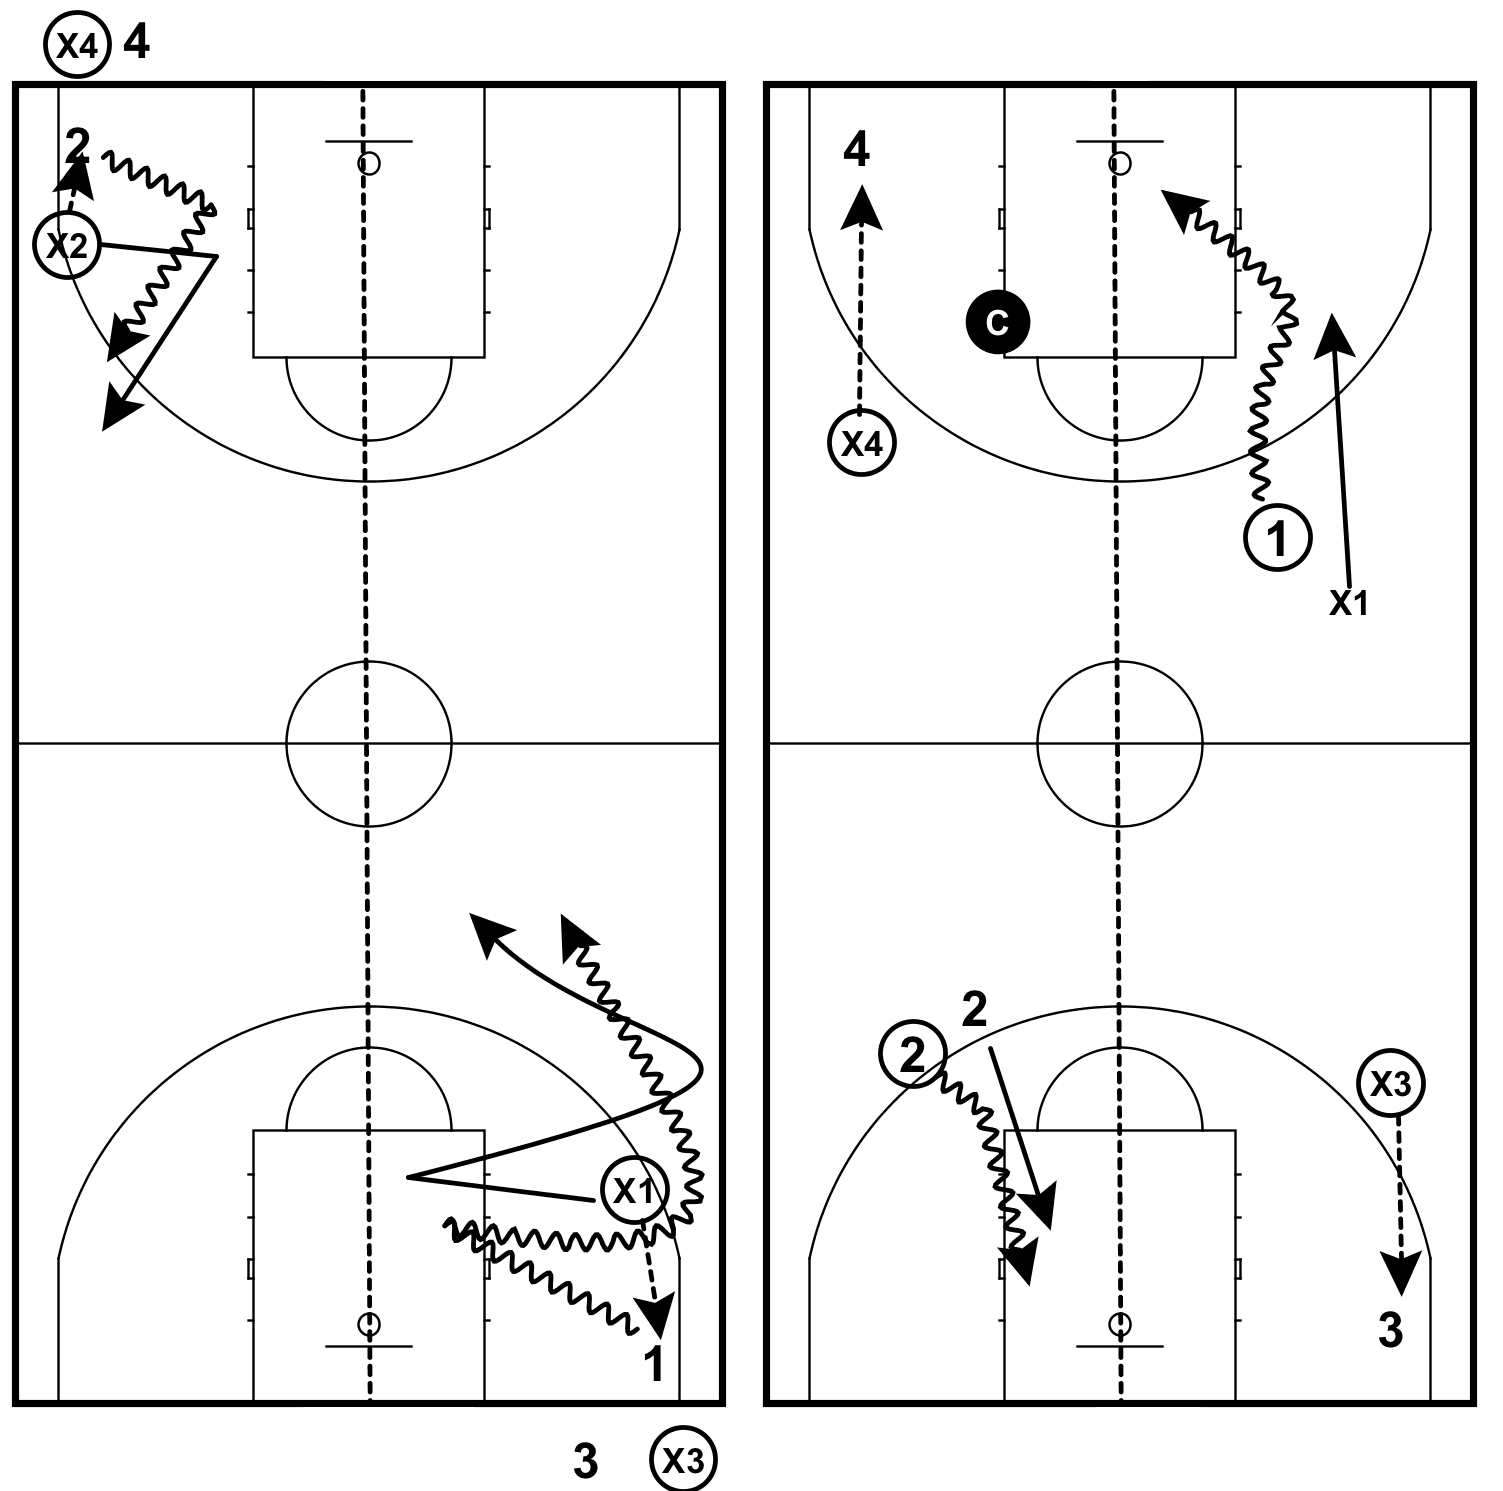 drills-ballhandling-full-court-1-on-1